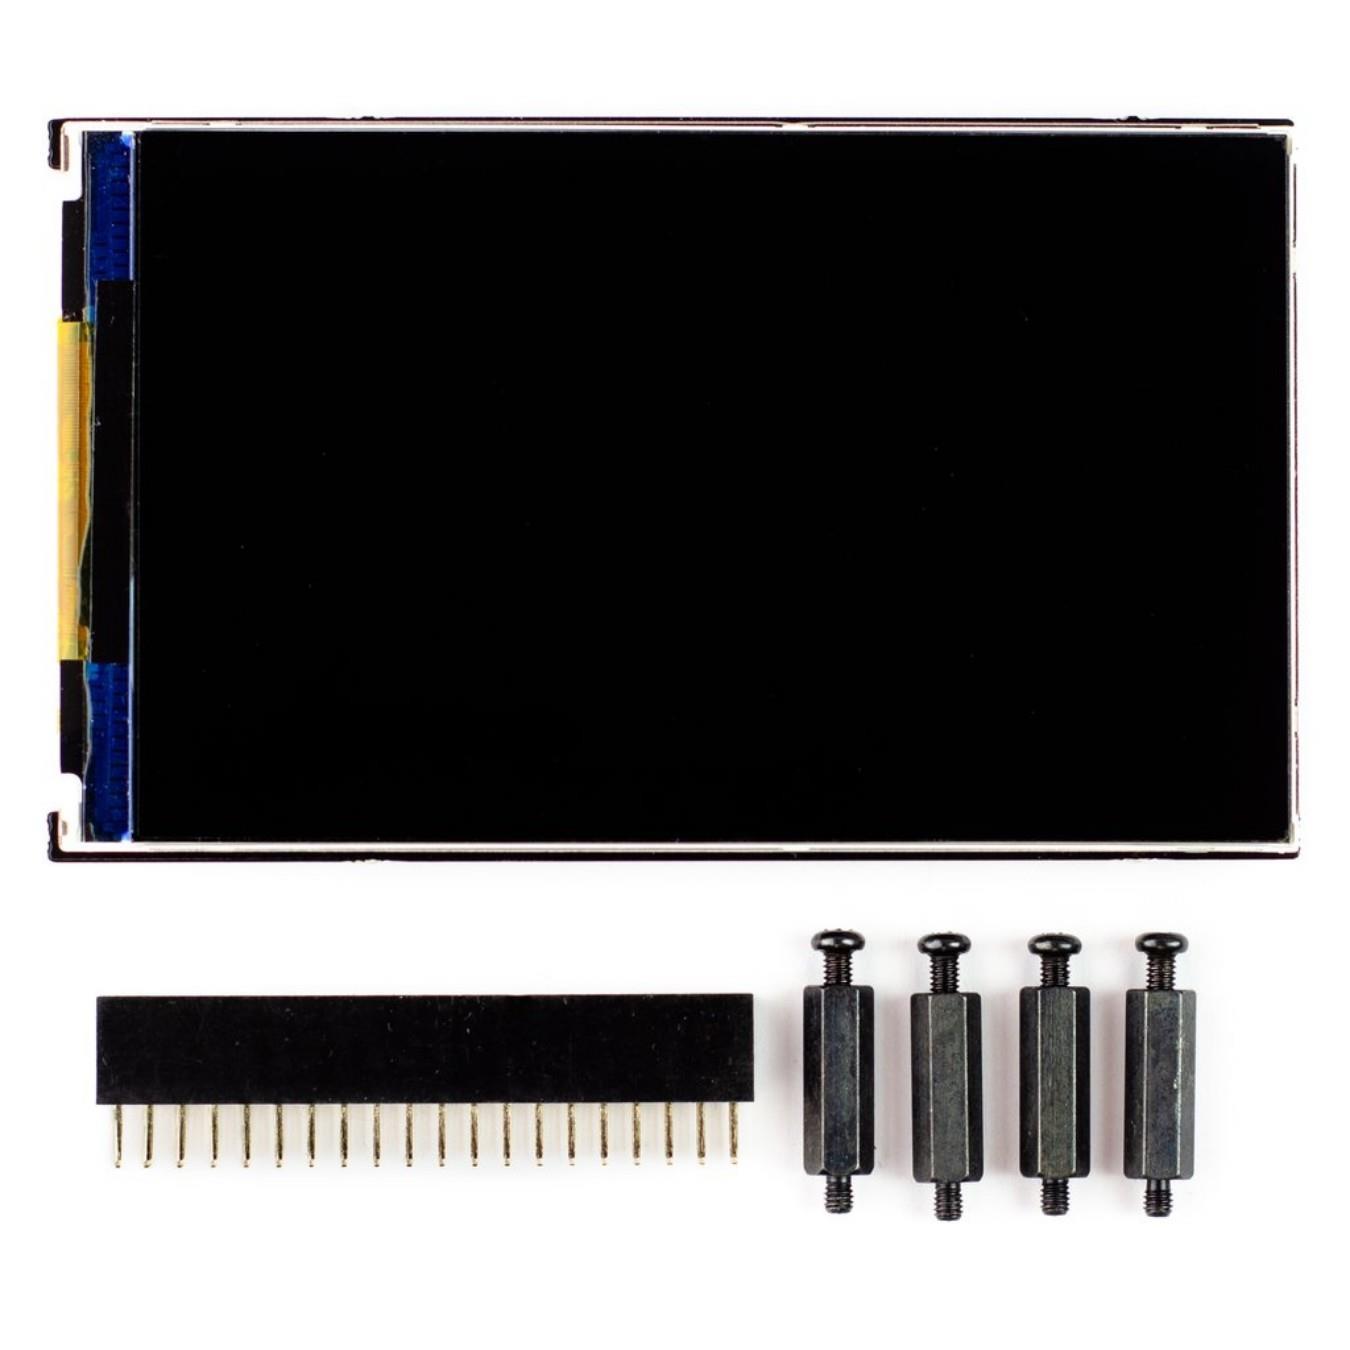 Pantalla Táctil Pimoroni HyperPixel 4.0 Pulgadas 800x480 TFT para Raspberry Pi